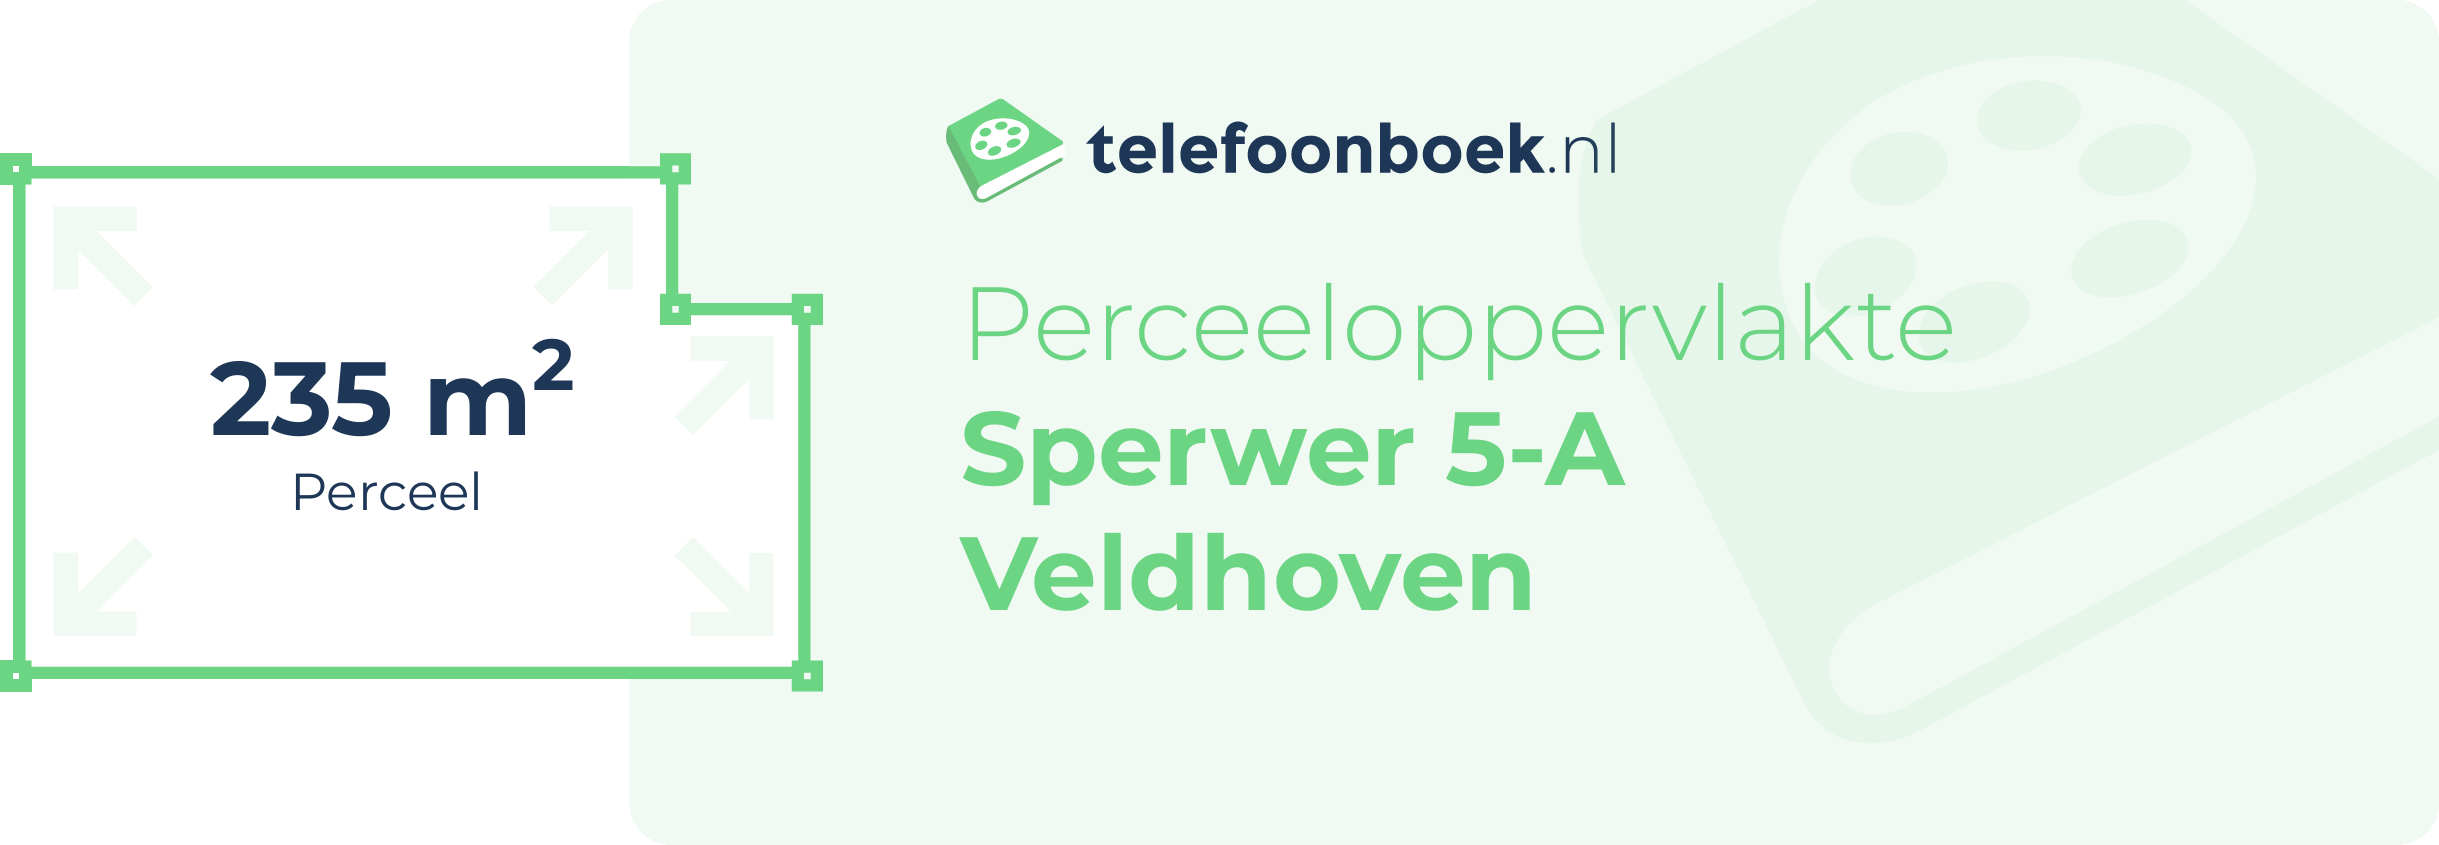 Perceeloppervlakte Sperwer 5-A Veldhoven